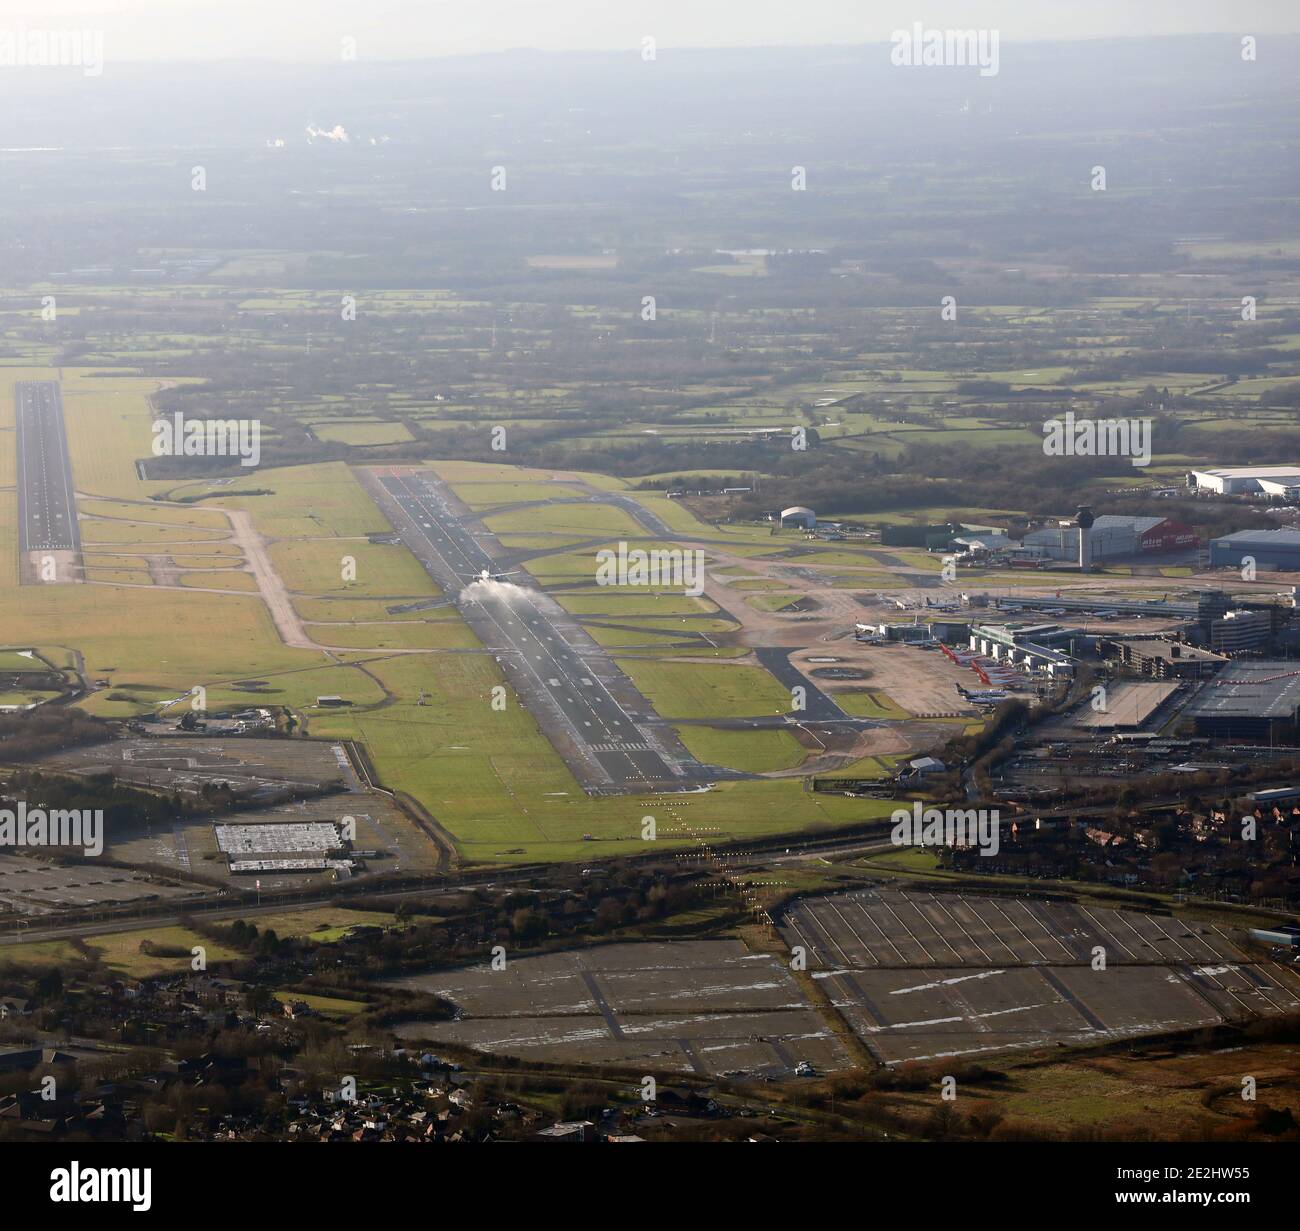 vue aérienne en regardant vers l'est sur une piste très humide à L'aéroport de Manchester en jet passager se déporte avec de l'eau spray visible Banque D'Images